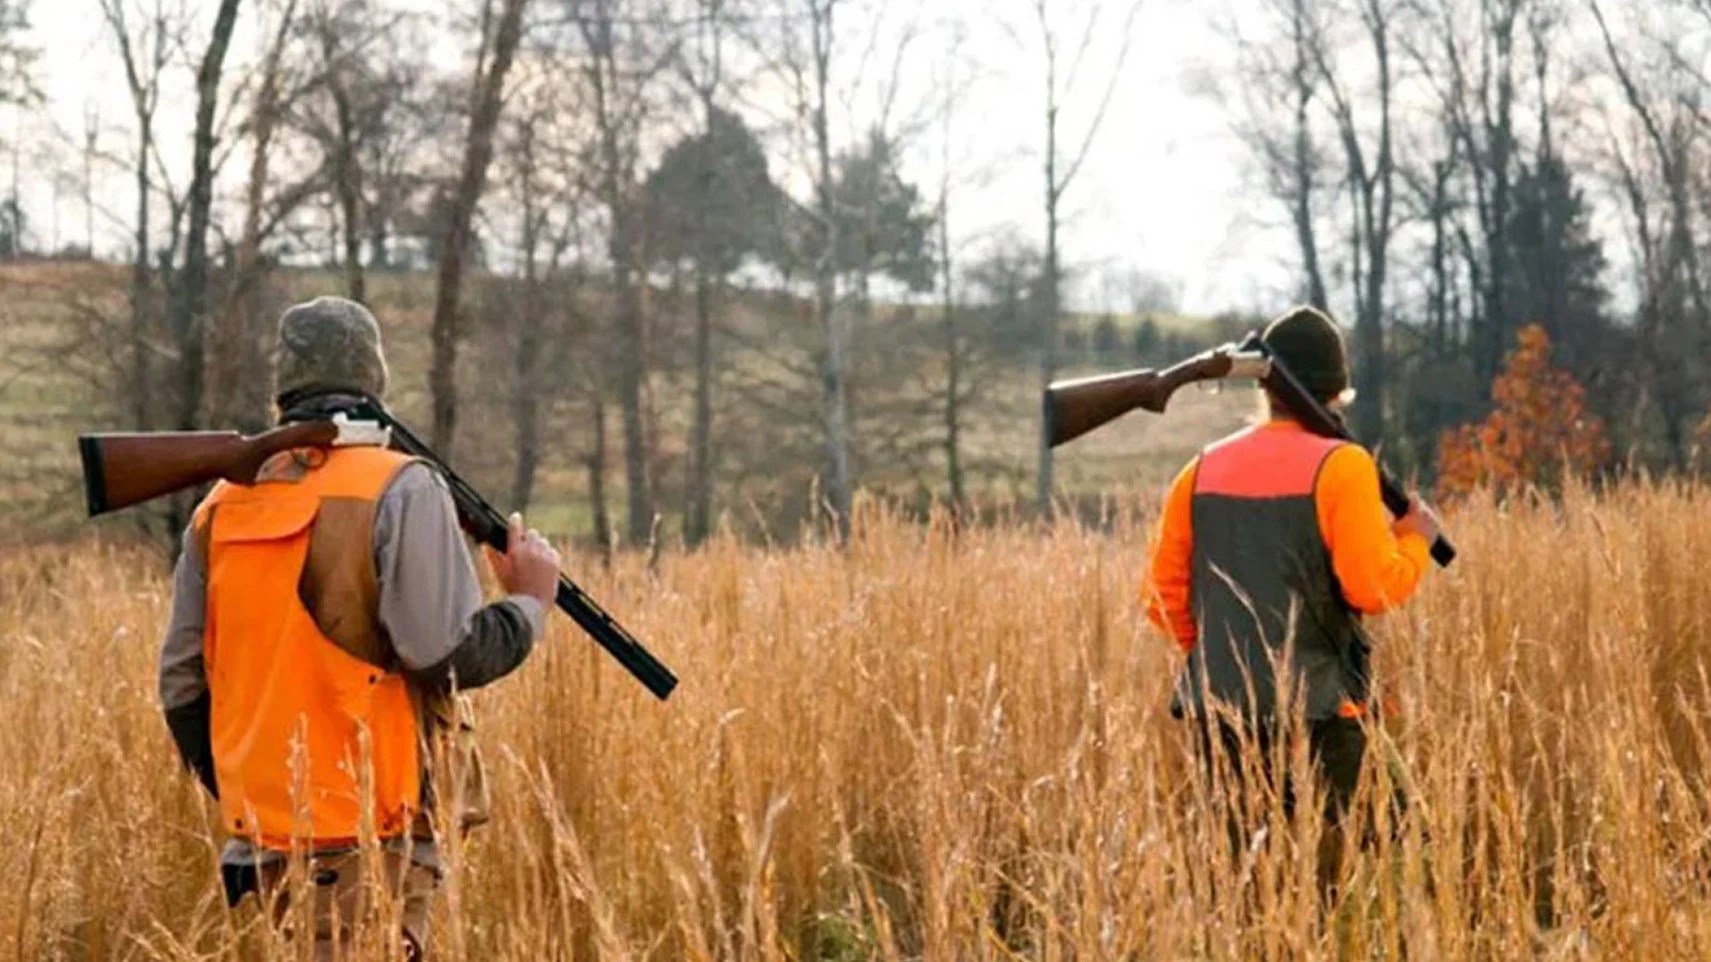 Άρχισε η θερινή κυνηγετική περίοδος, 19 χιλιάδες κυνηγοί αναμένεται να εξορμήσουν στην ύπαιθρο